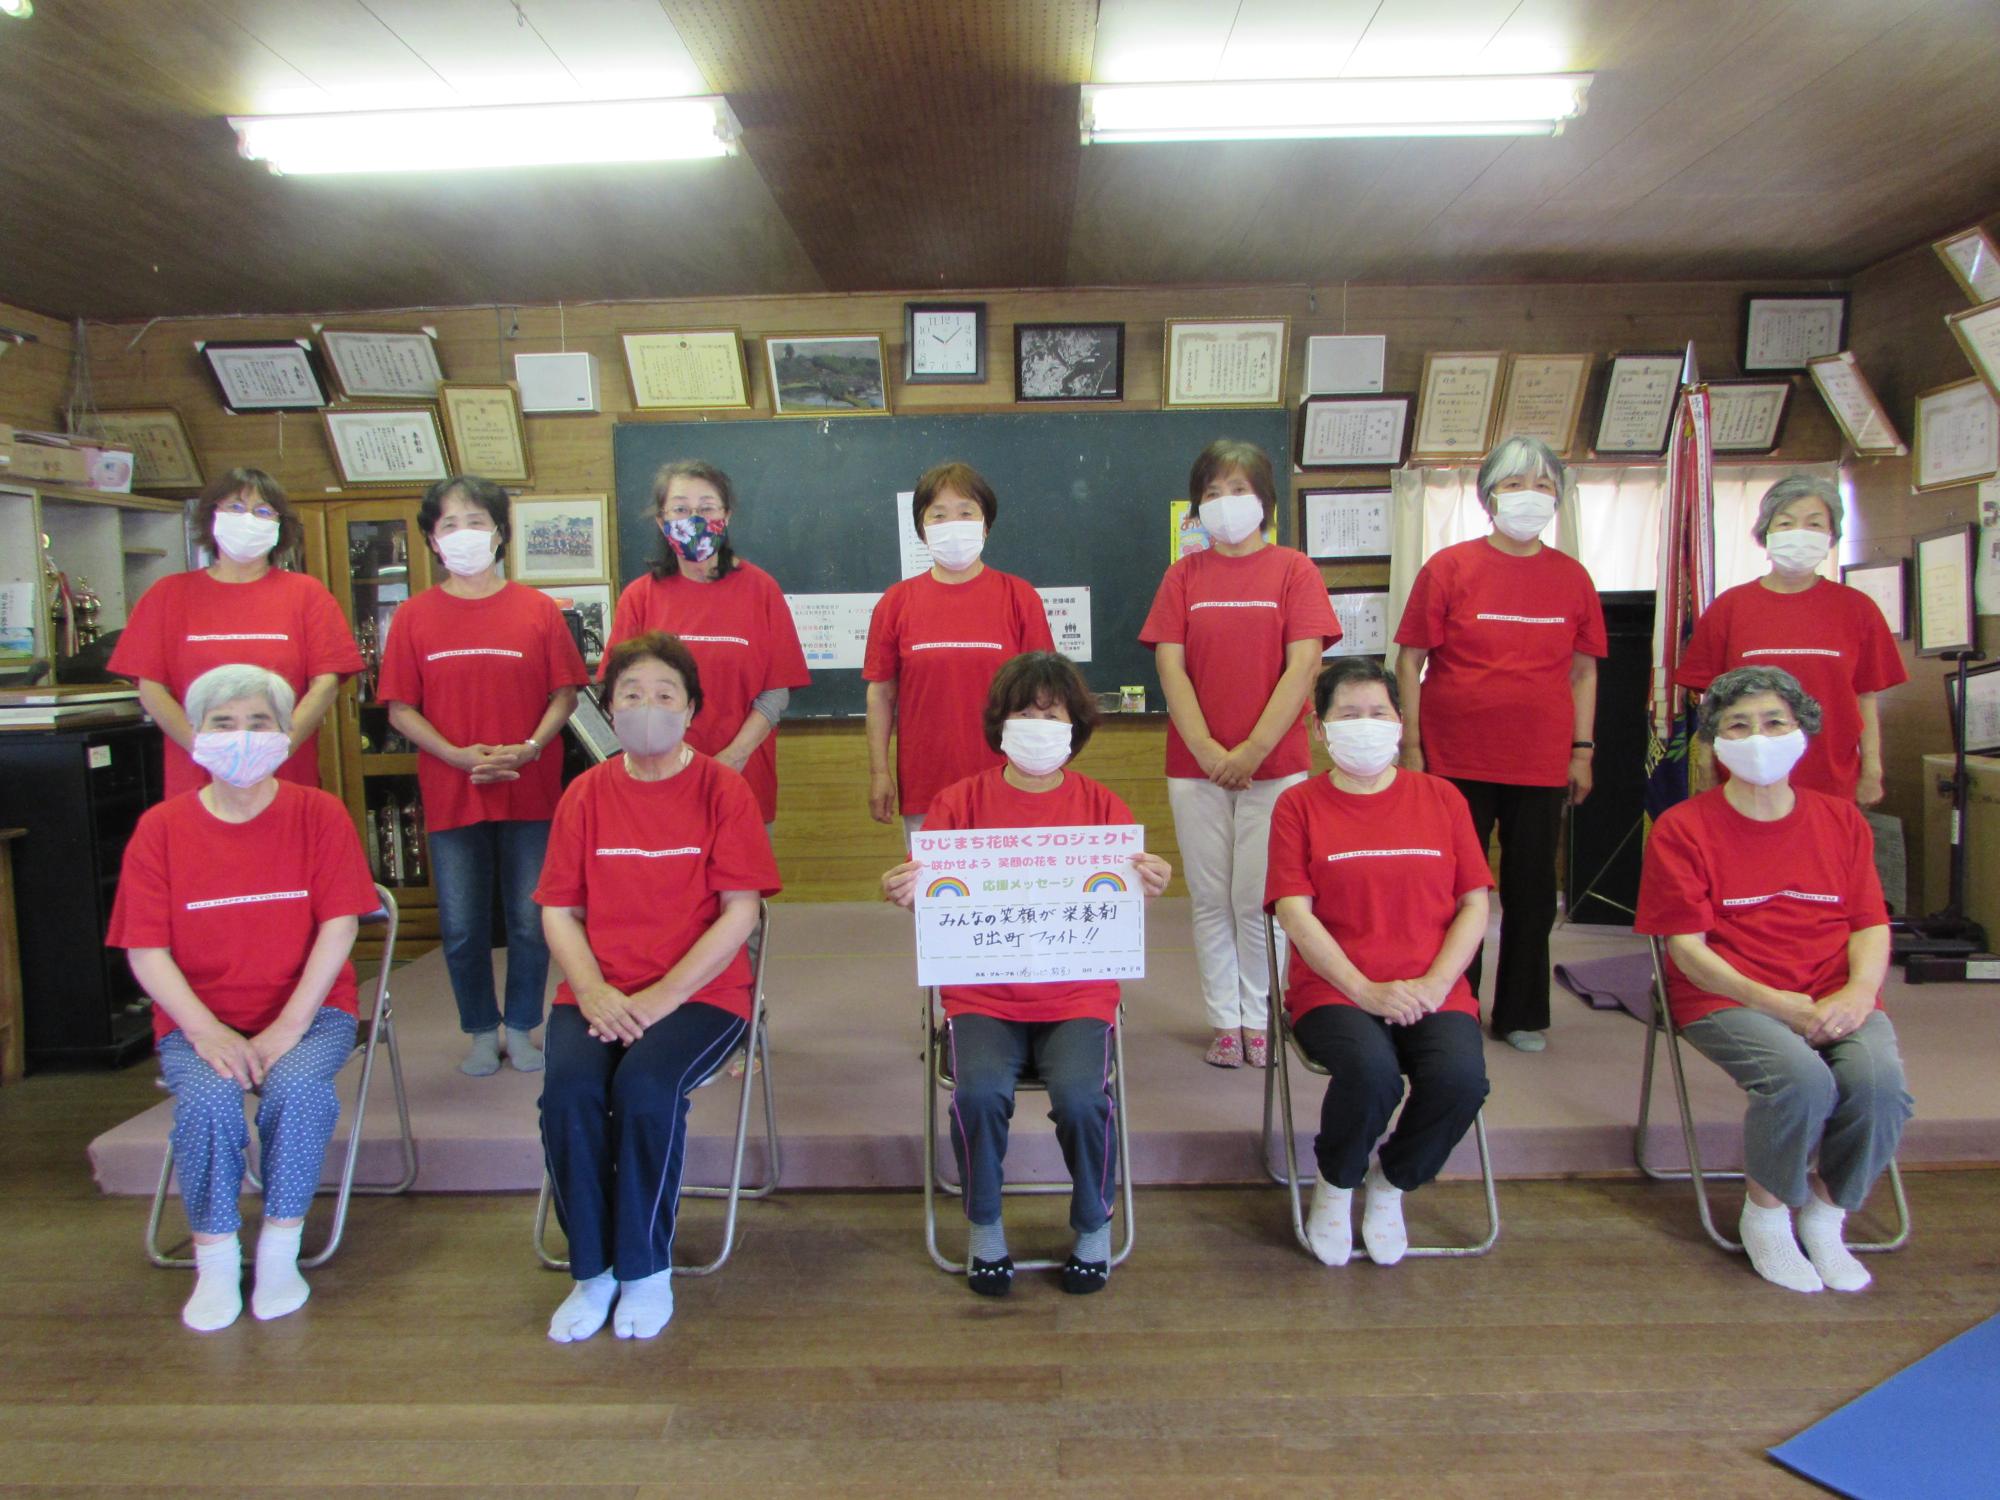 お揃いの赤いシャツを着た12名の女性たちが集まり、前中央のパイプ椅子に座っている女性が両手で応援メッセージを持っている集合写真